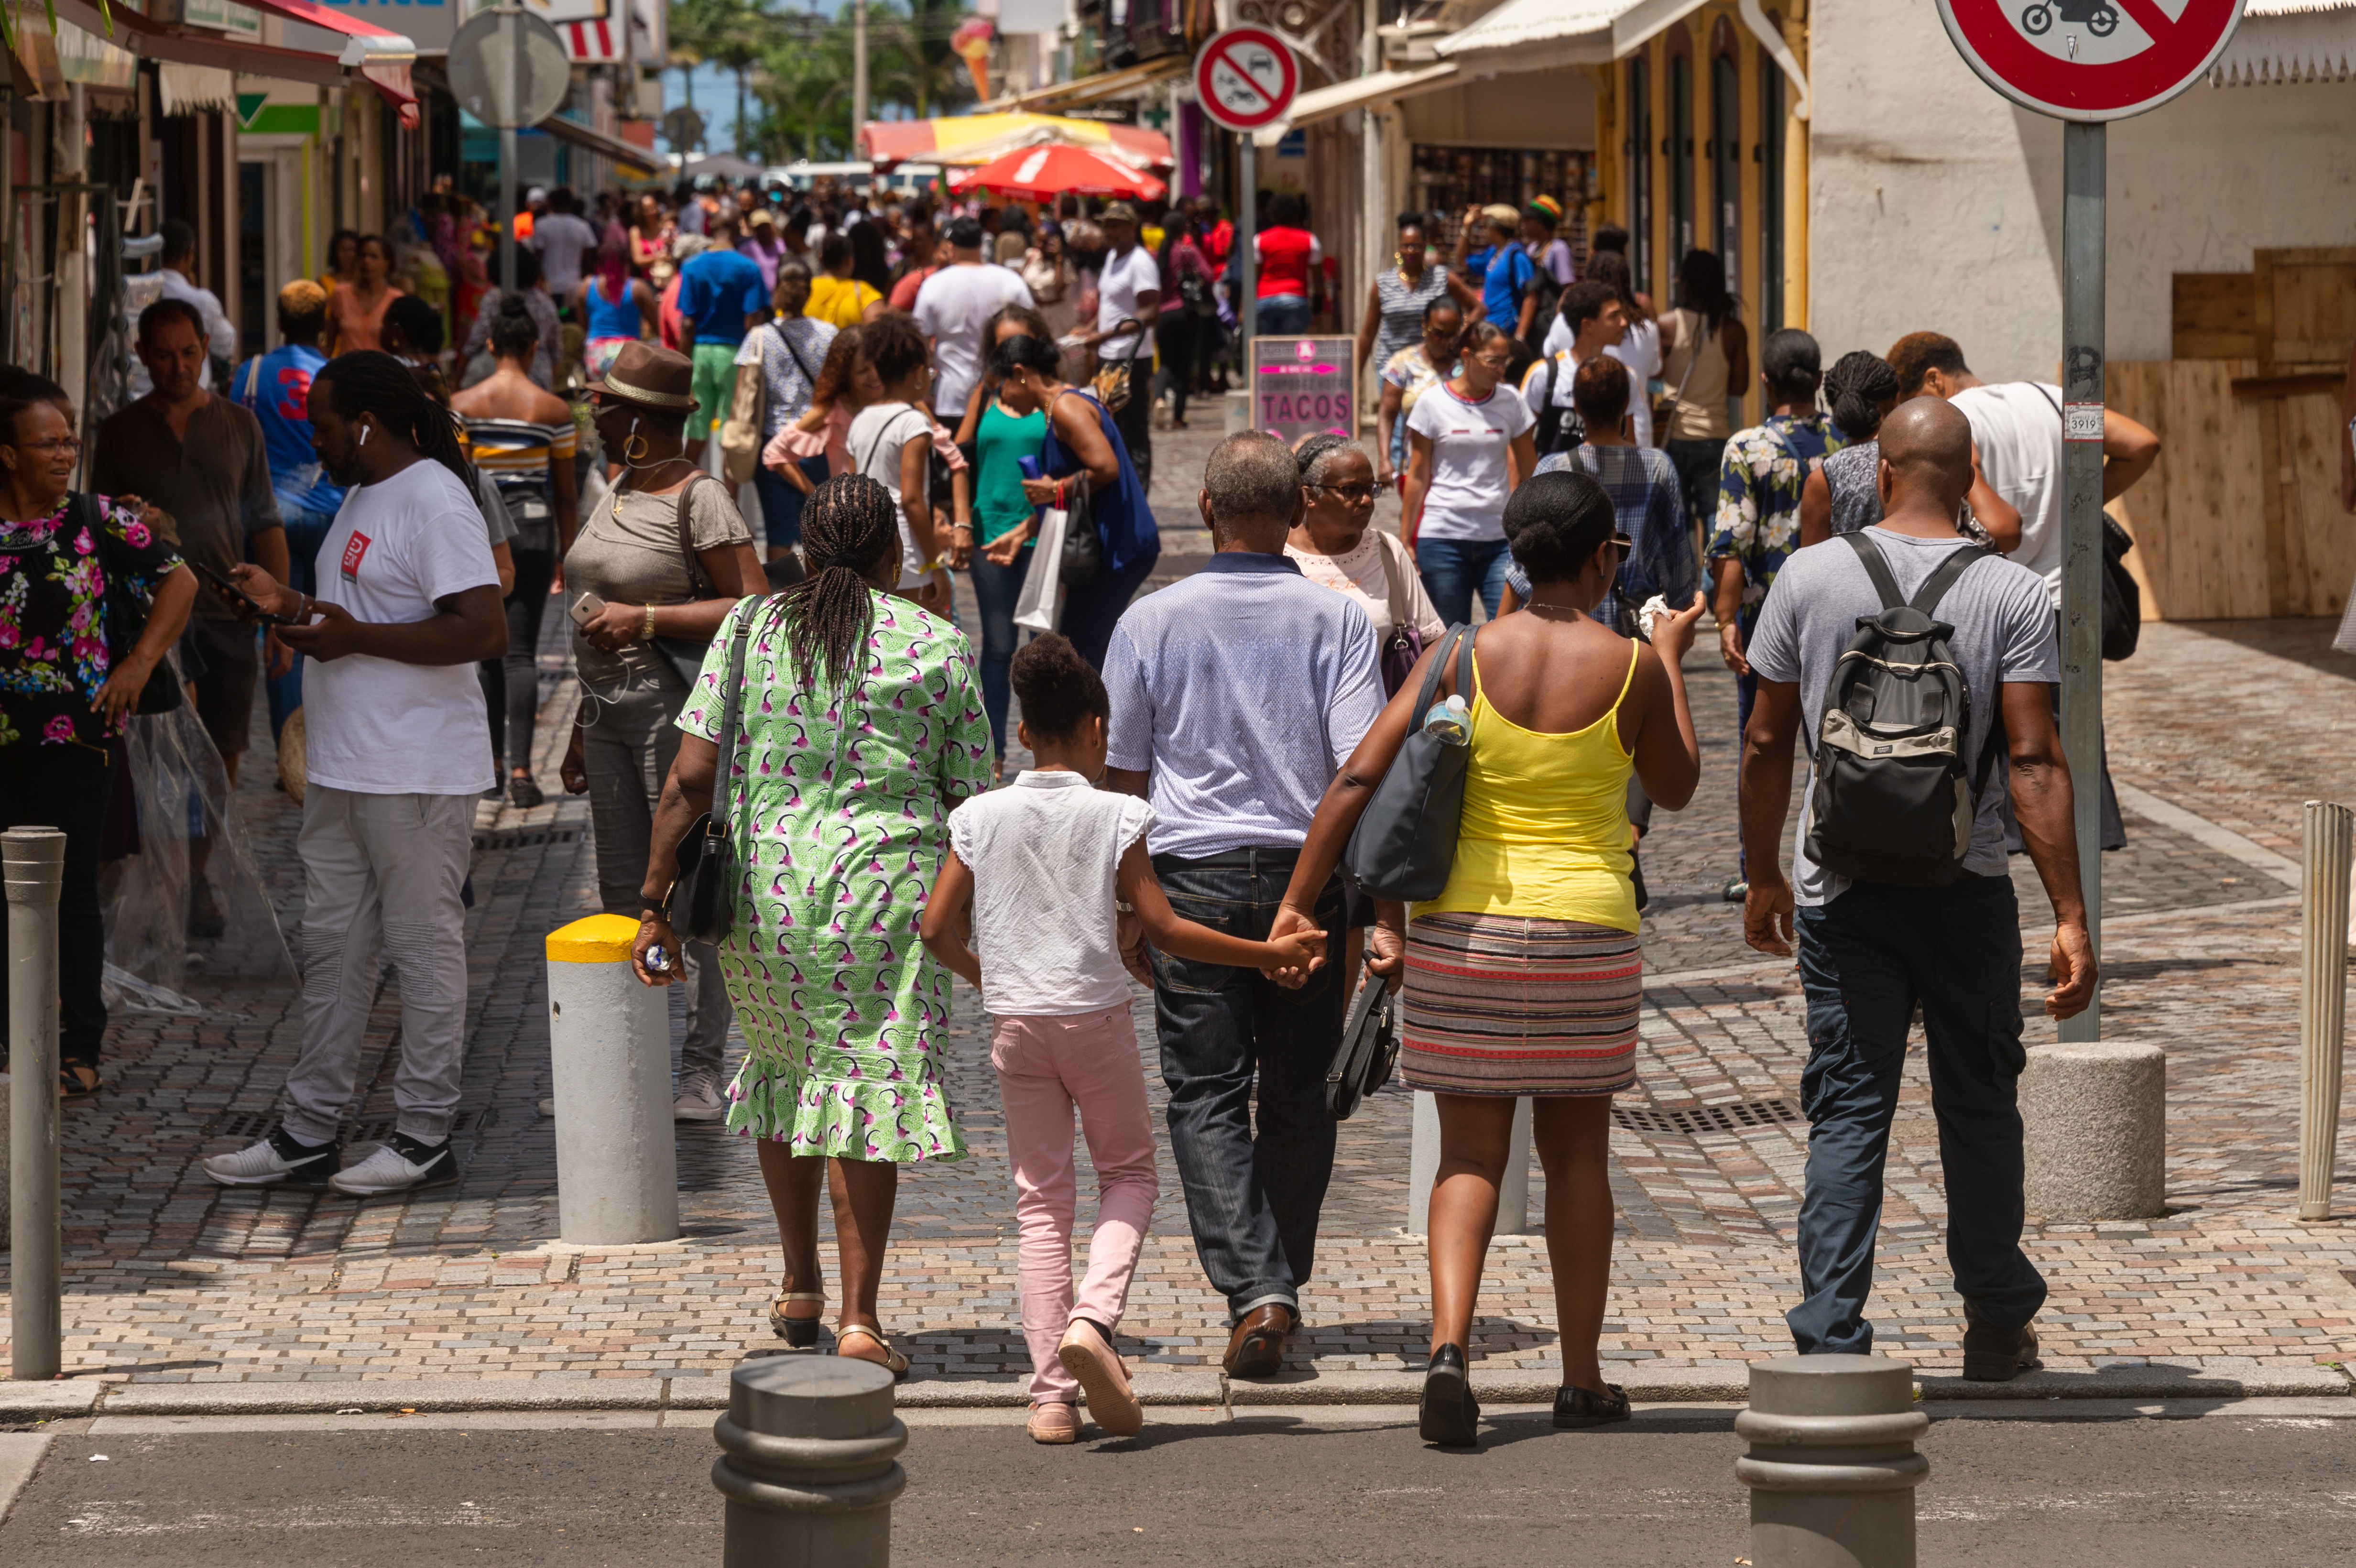     La Martinique pourrait connaître le plus fort dépeuplement des territoires français

